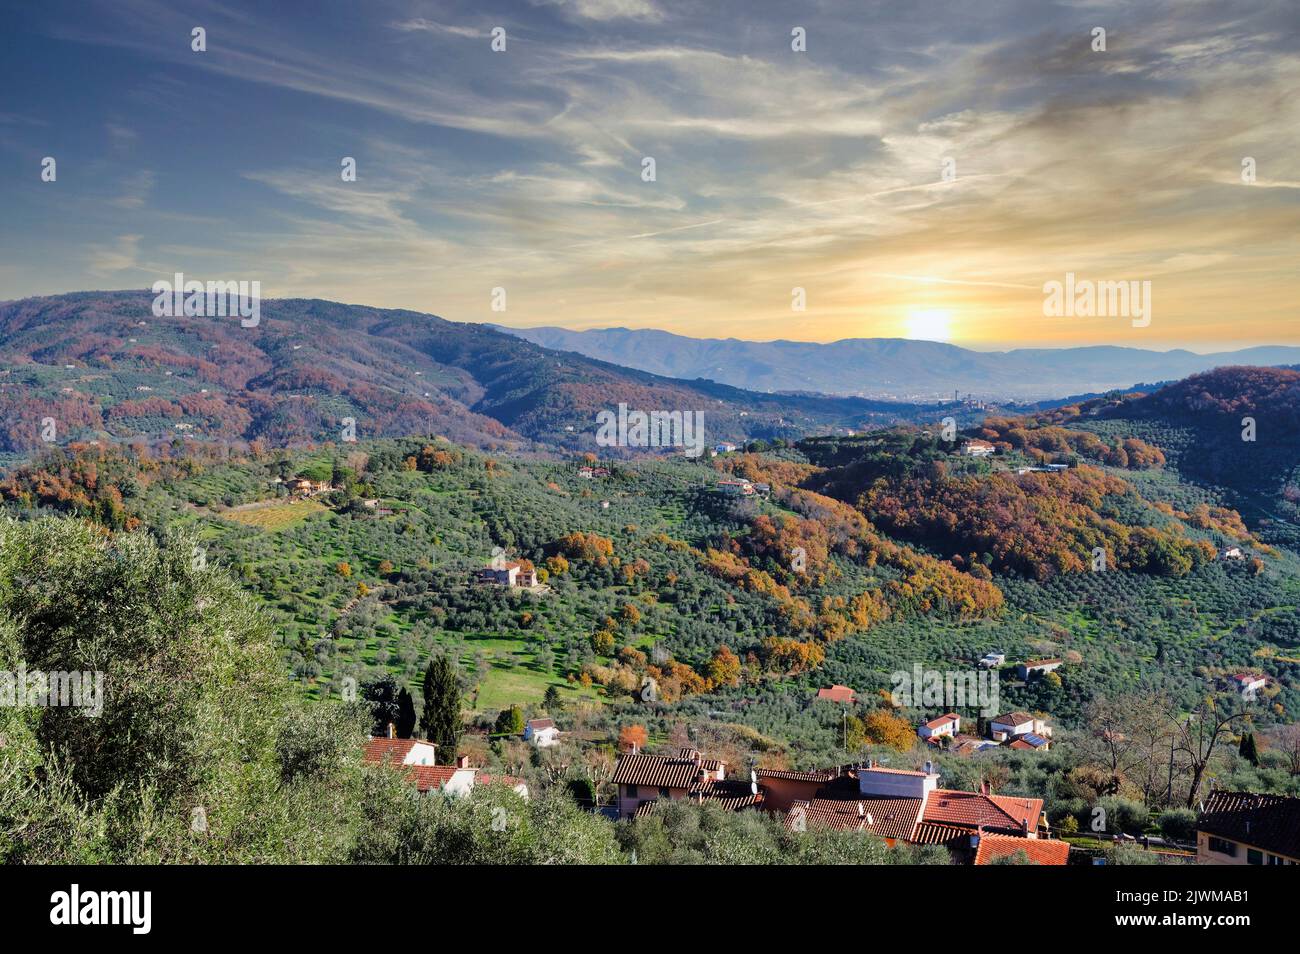 Vista aérea del valle de Valdinievole, Toscana, Italia Foto de stock